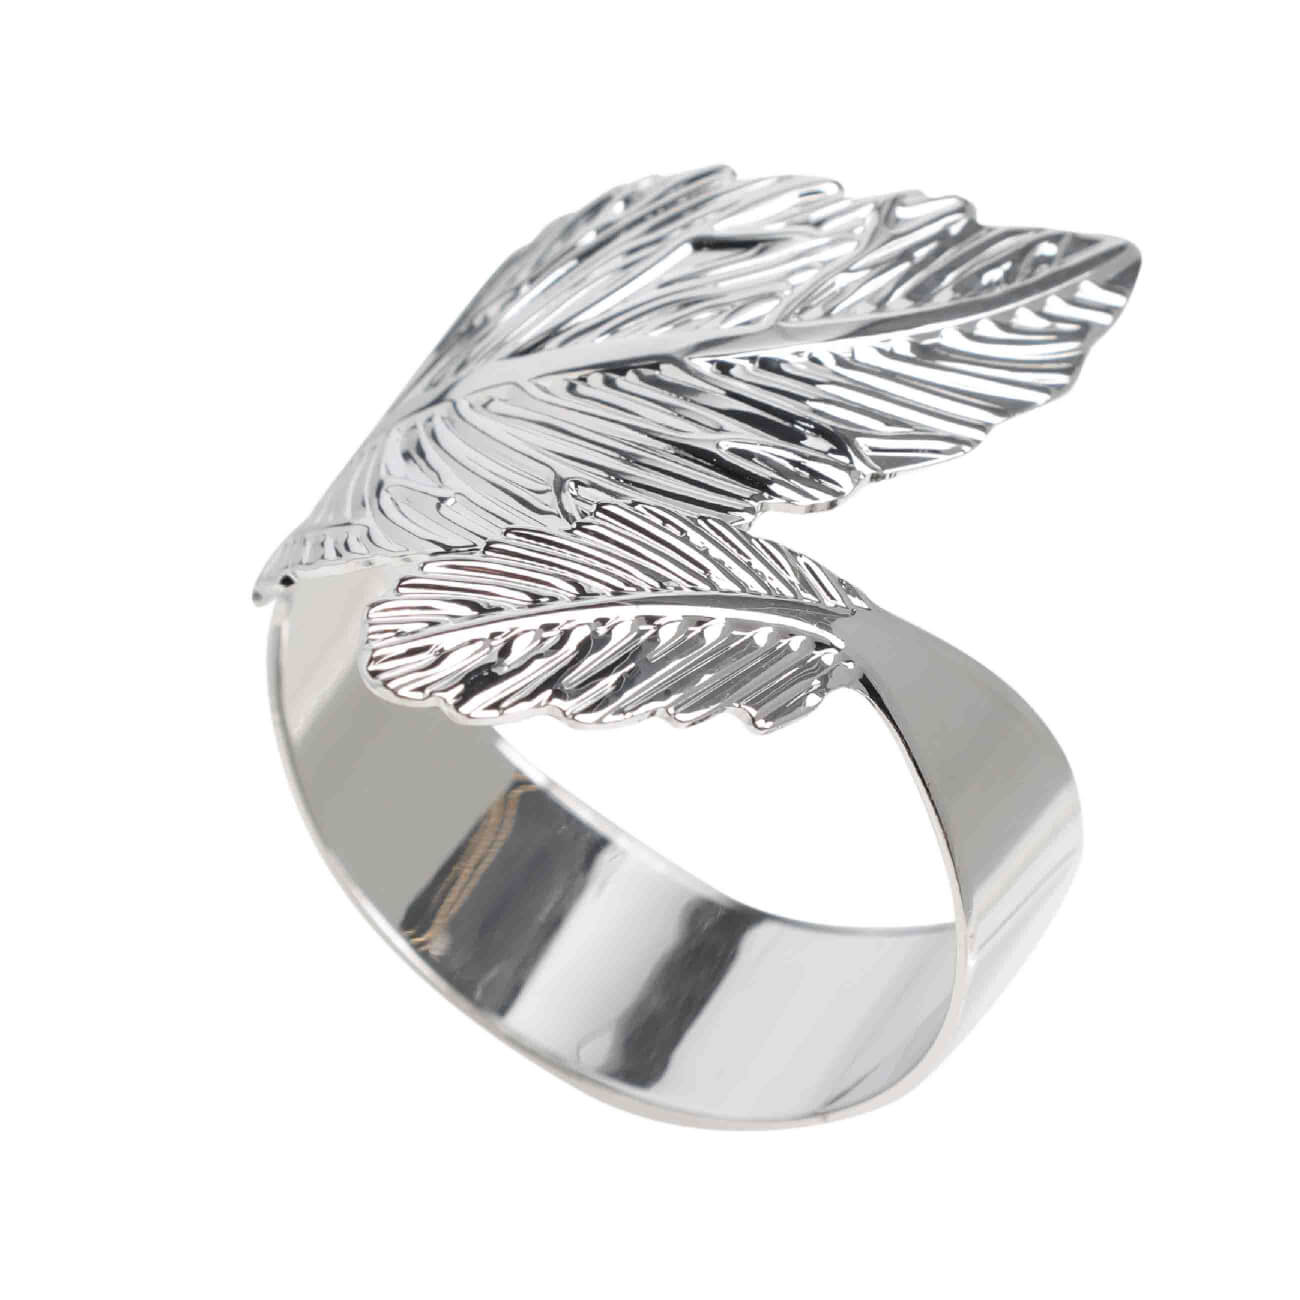 Кольцо для салфеток, 5 см, металл, серебристое, Листья, Print кольцо amore ок ное в серебре безразмерно